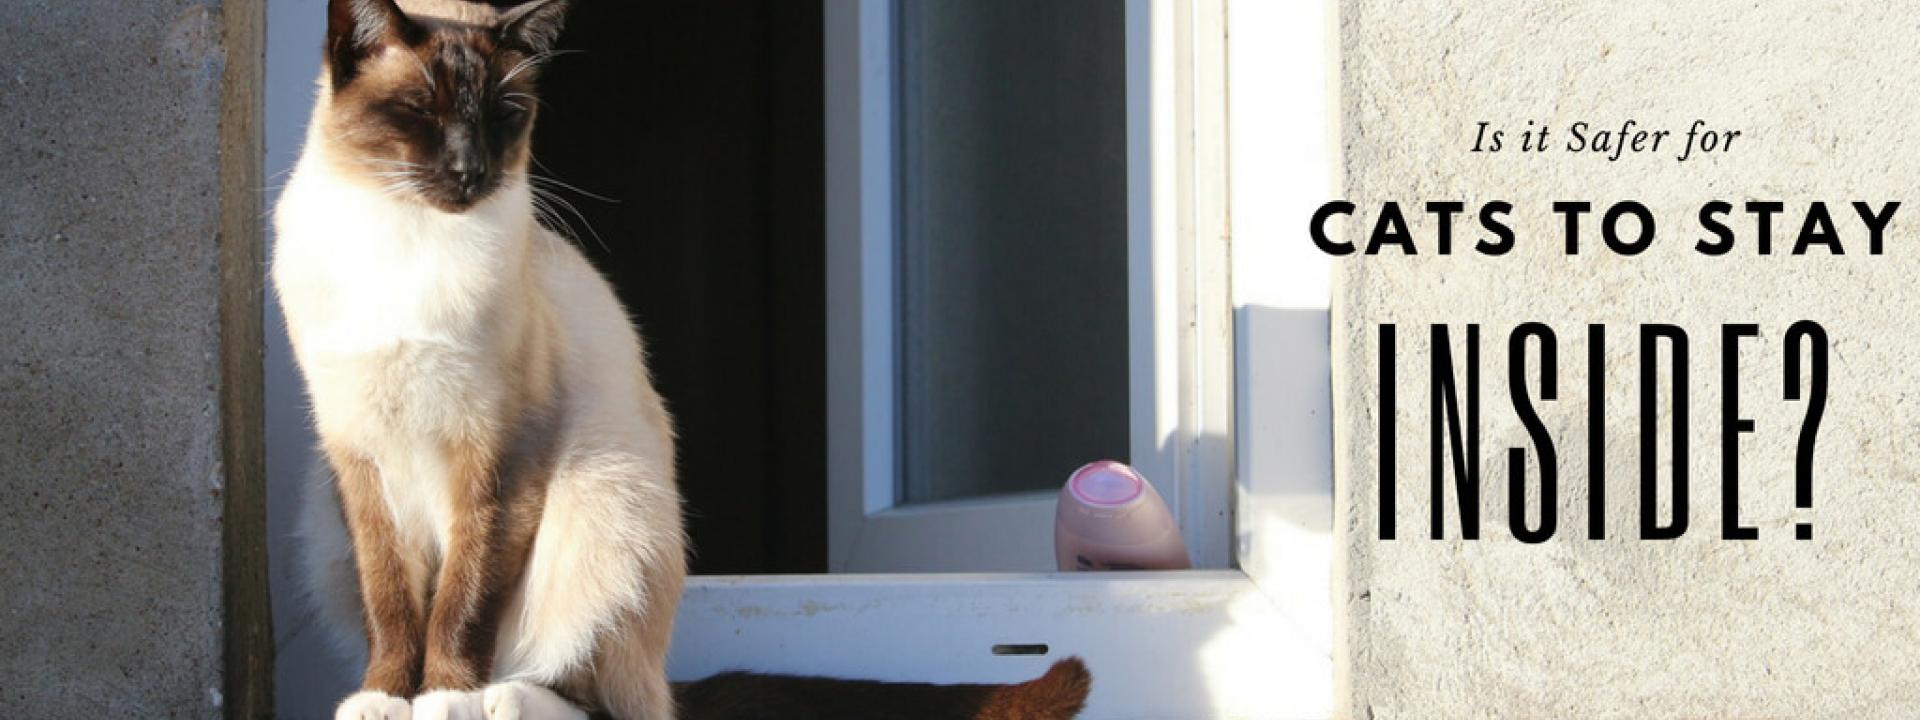 cat-outside-blog-header.jpg